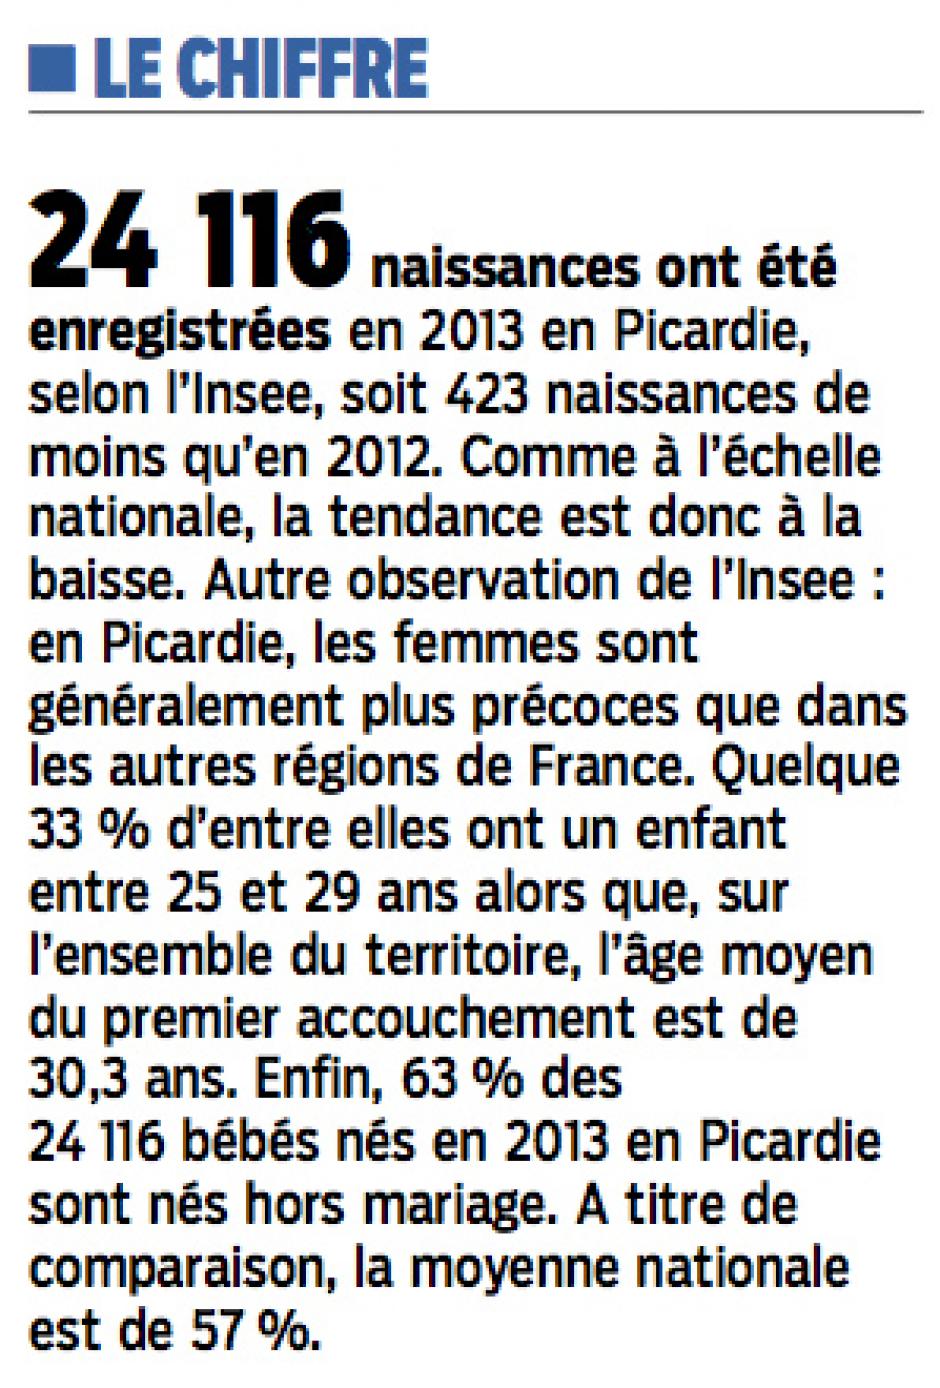 20140926-LeP-Picardie-24 116 naissances dans la Région en 2013 (423 de moins qu'en 2012)